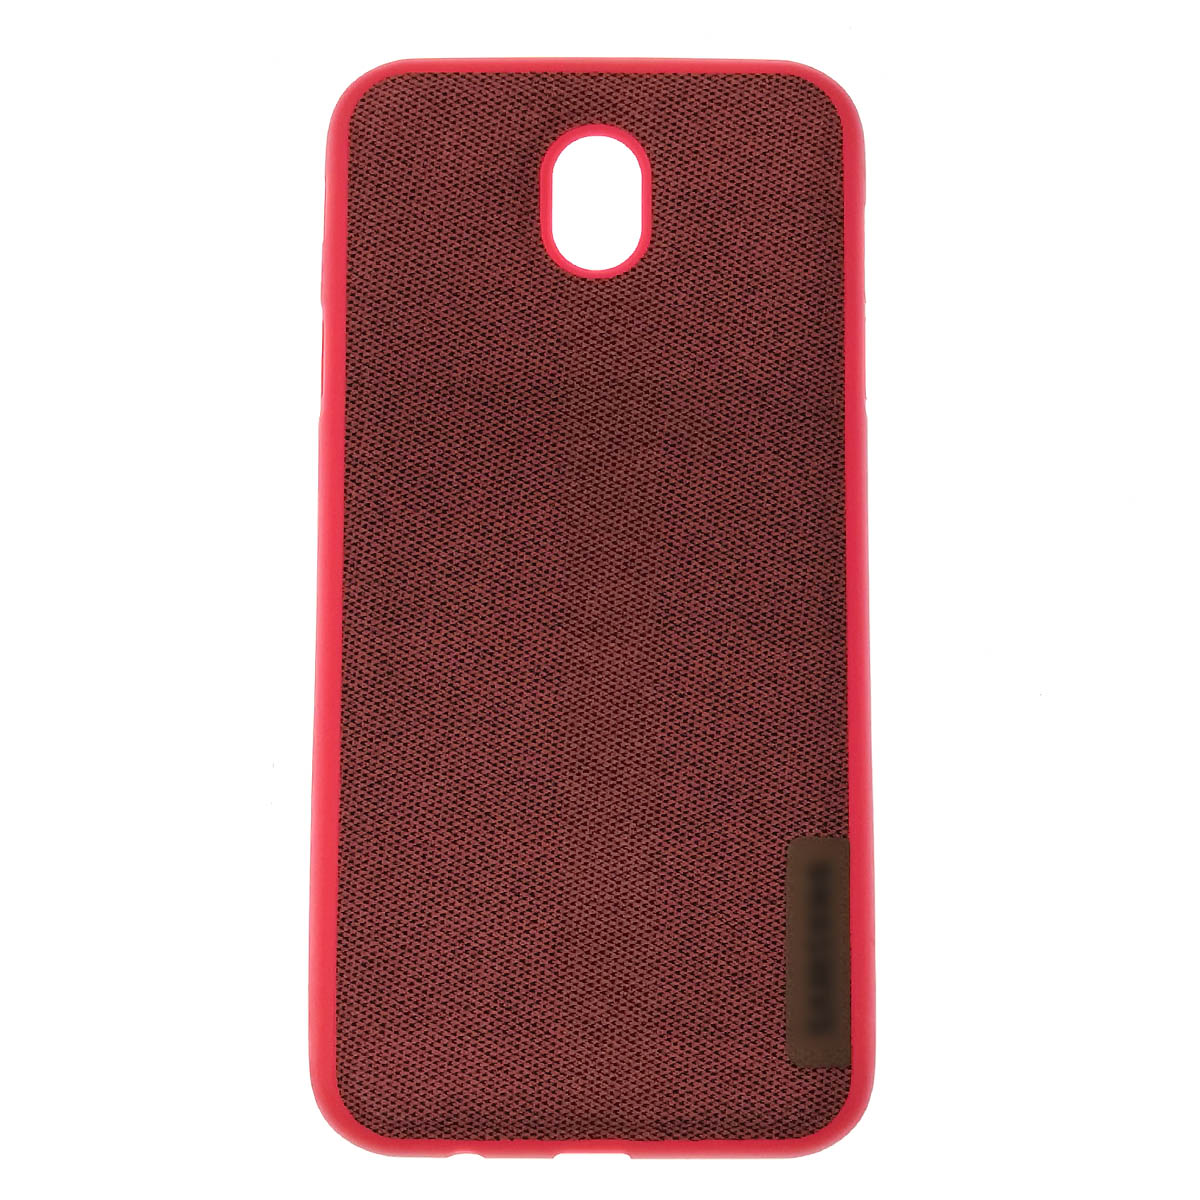 Чехол накладка для SAMSUNG Galaxy J7 2017 (SM-J730), силикон, под джинс, цвет красный